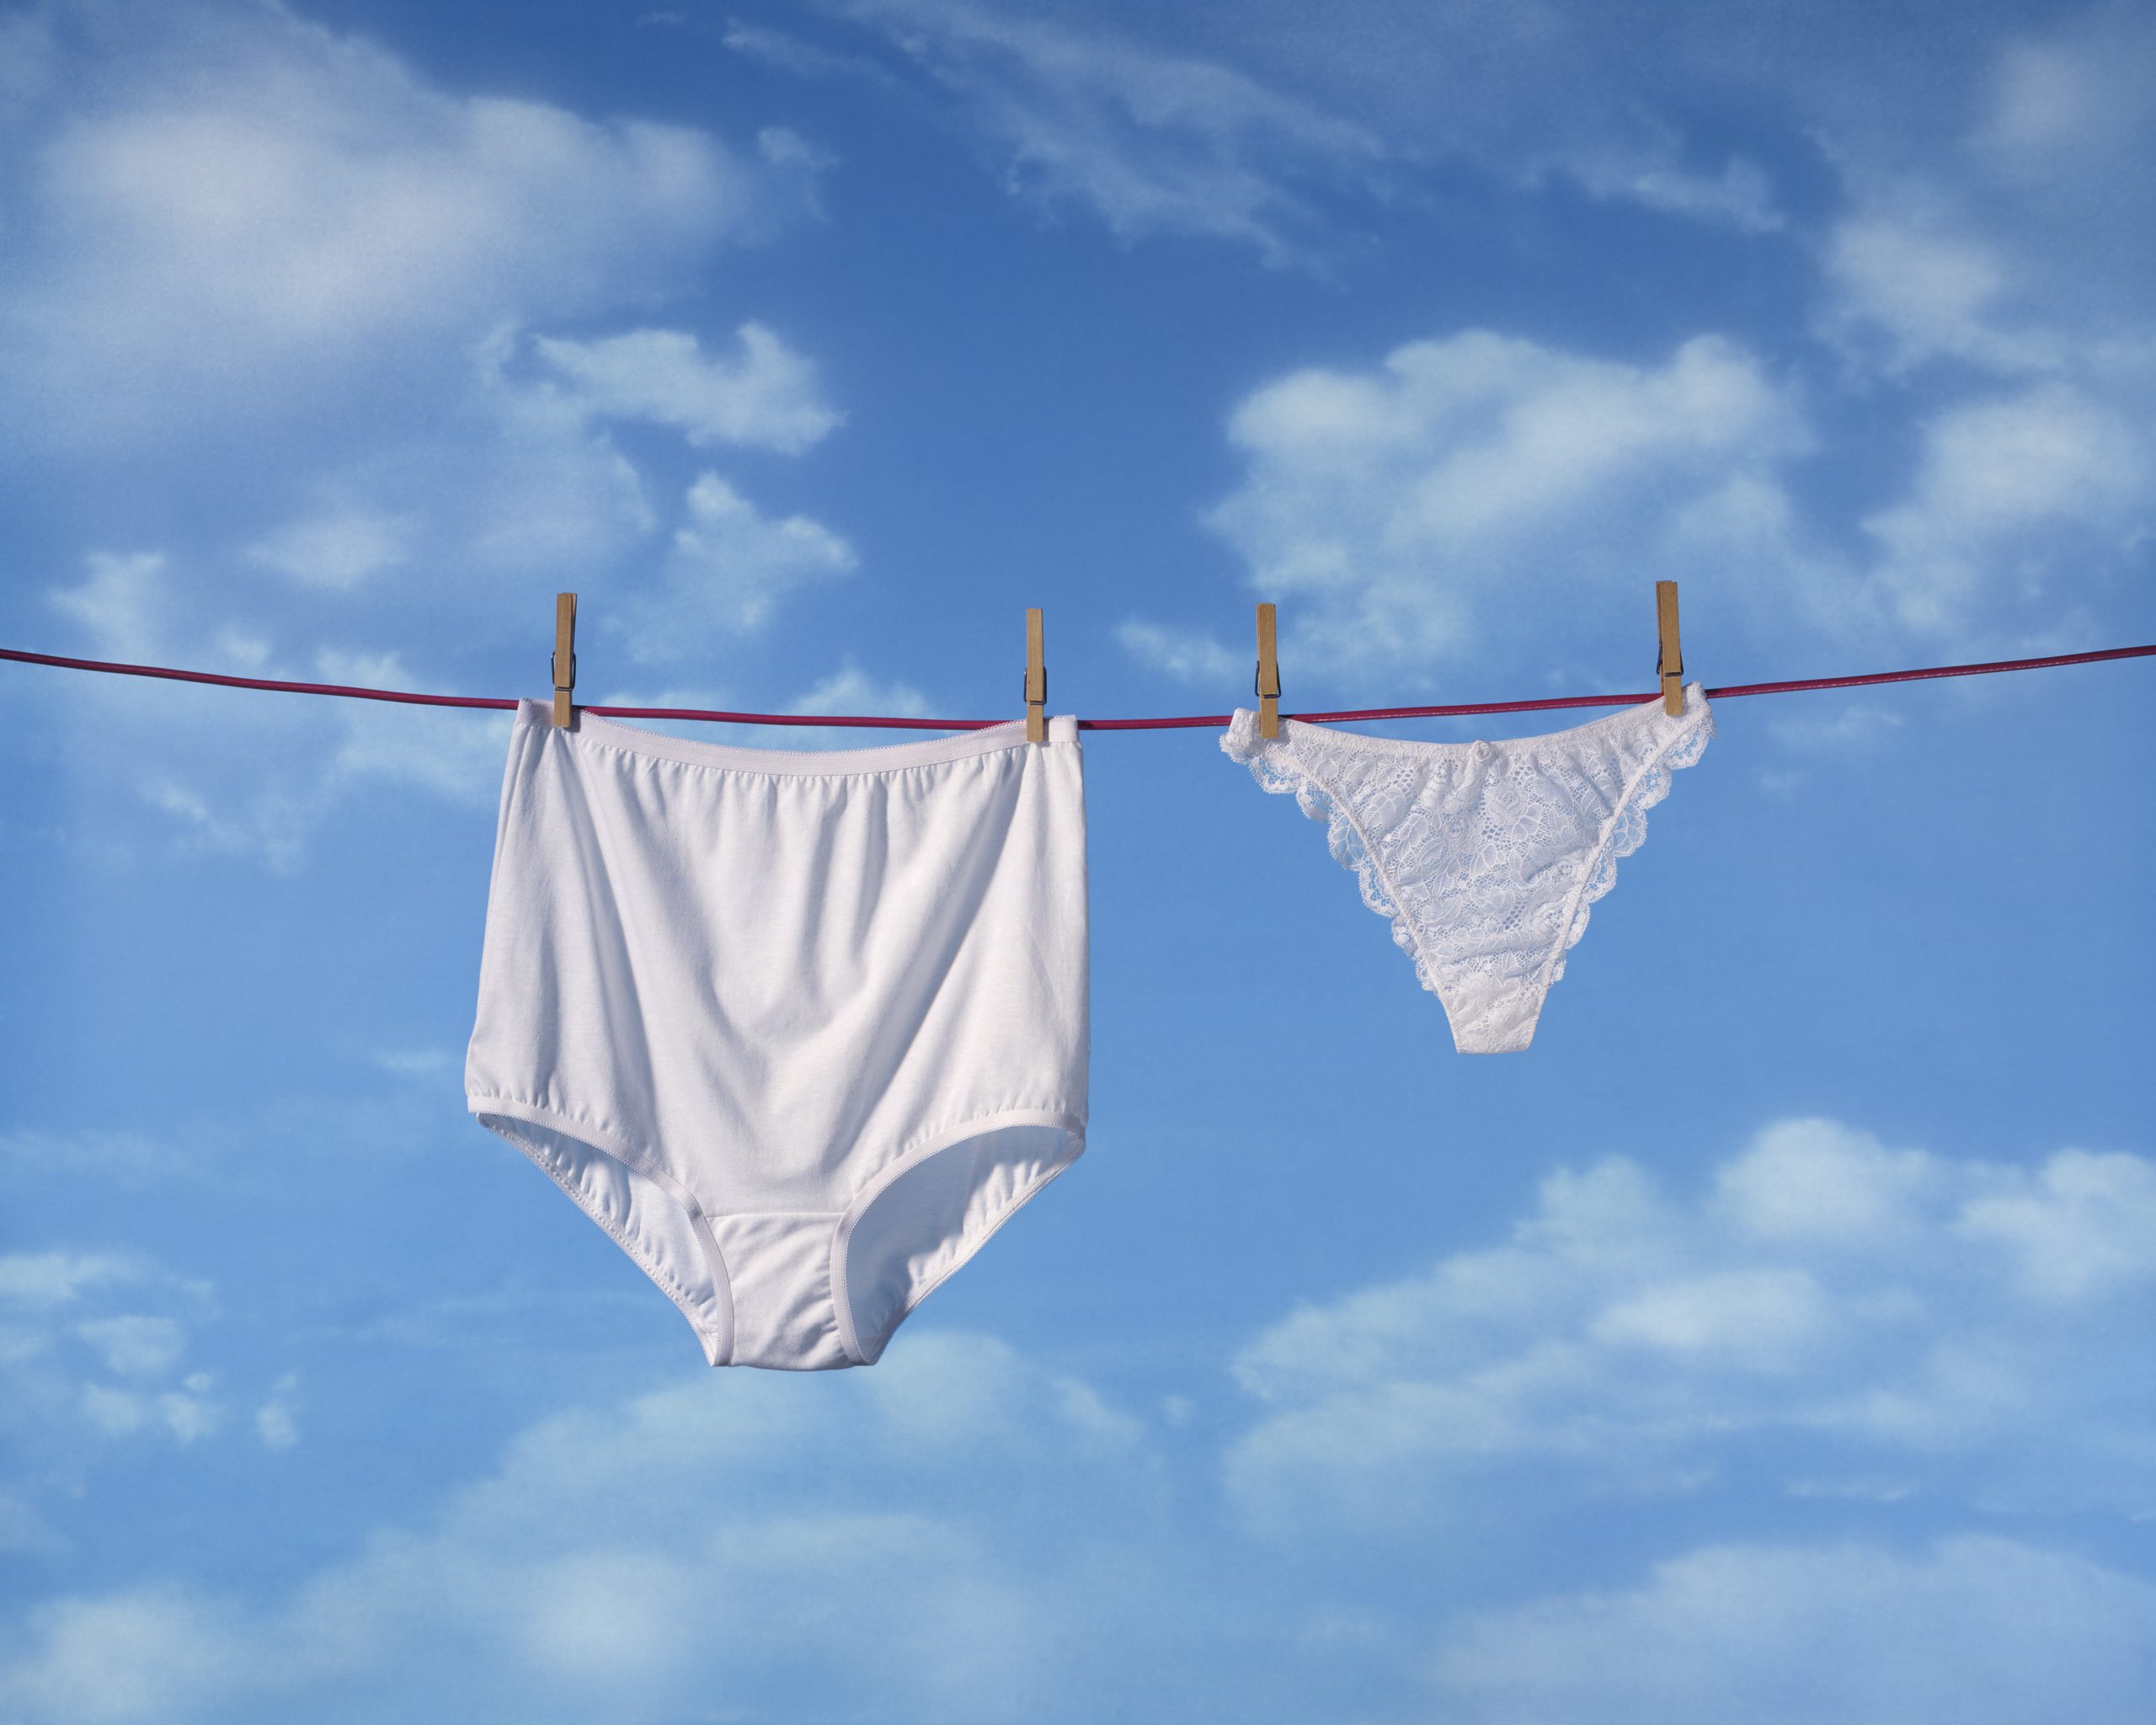 Underwear On Clothesline